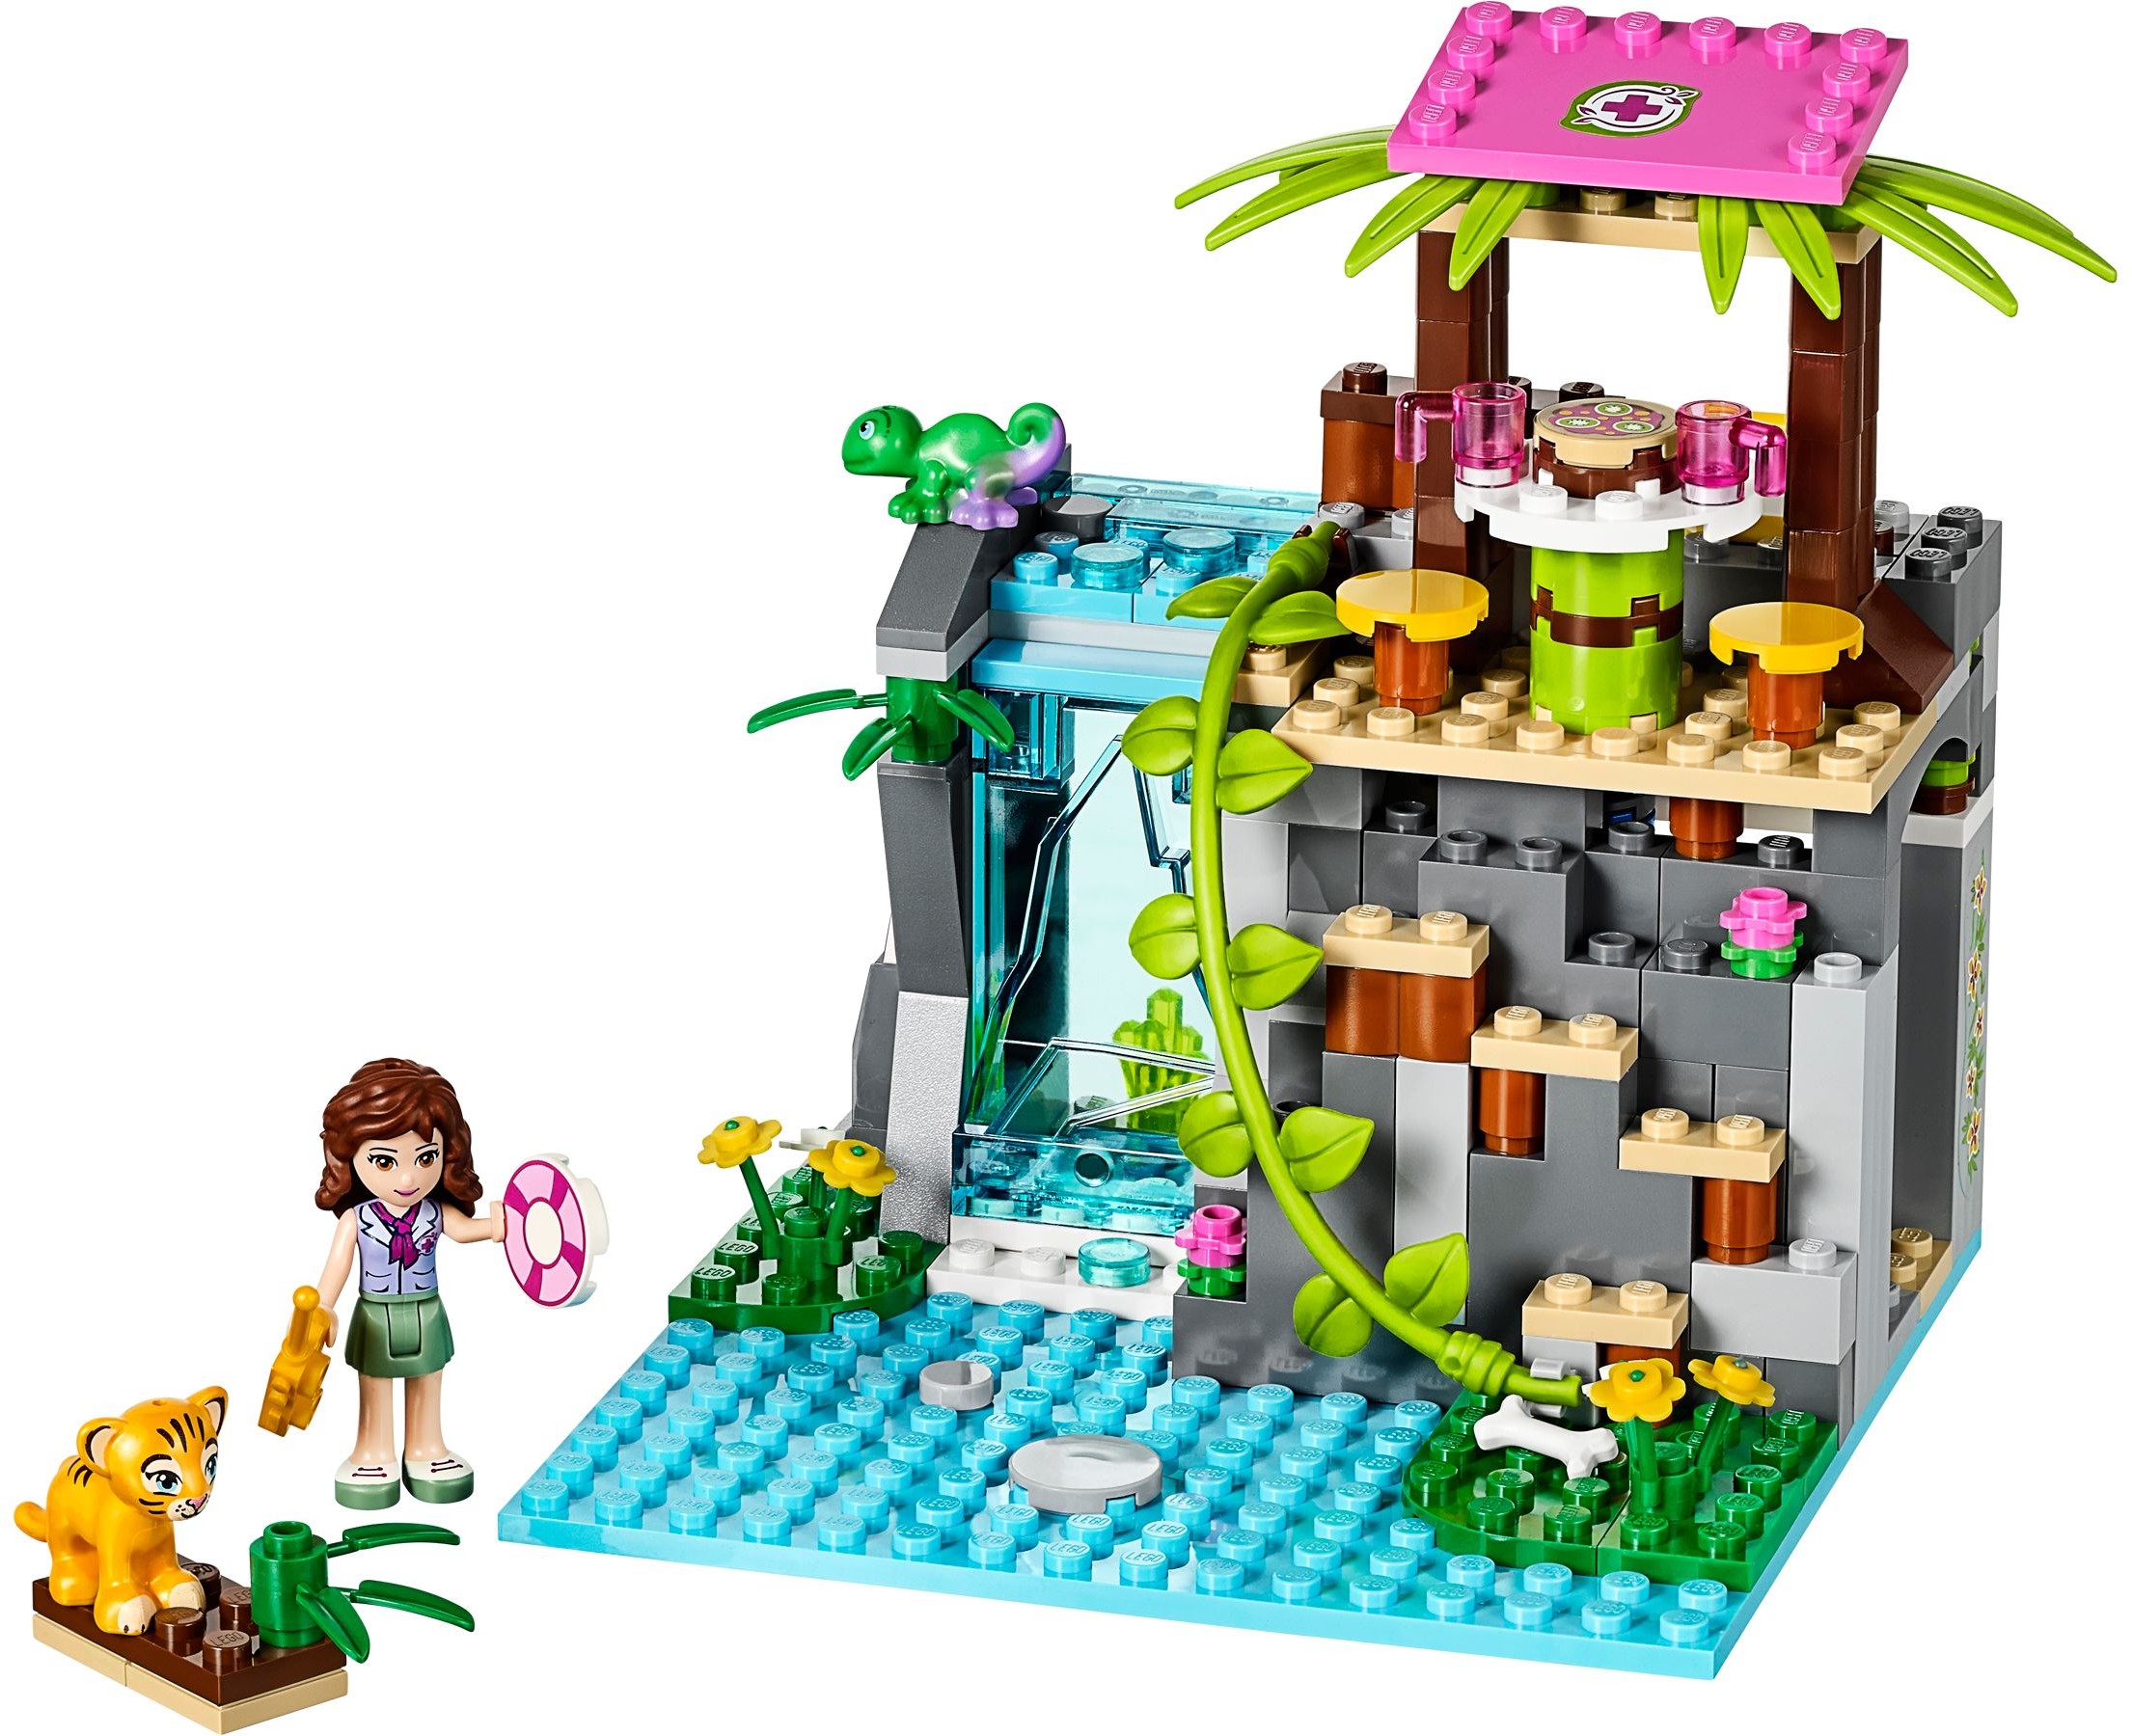 LEGO Friends Jungle Rescue Brickset